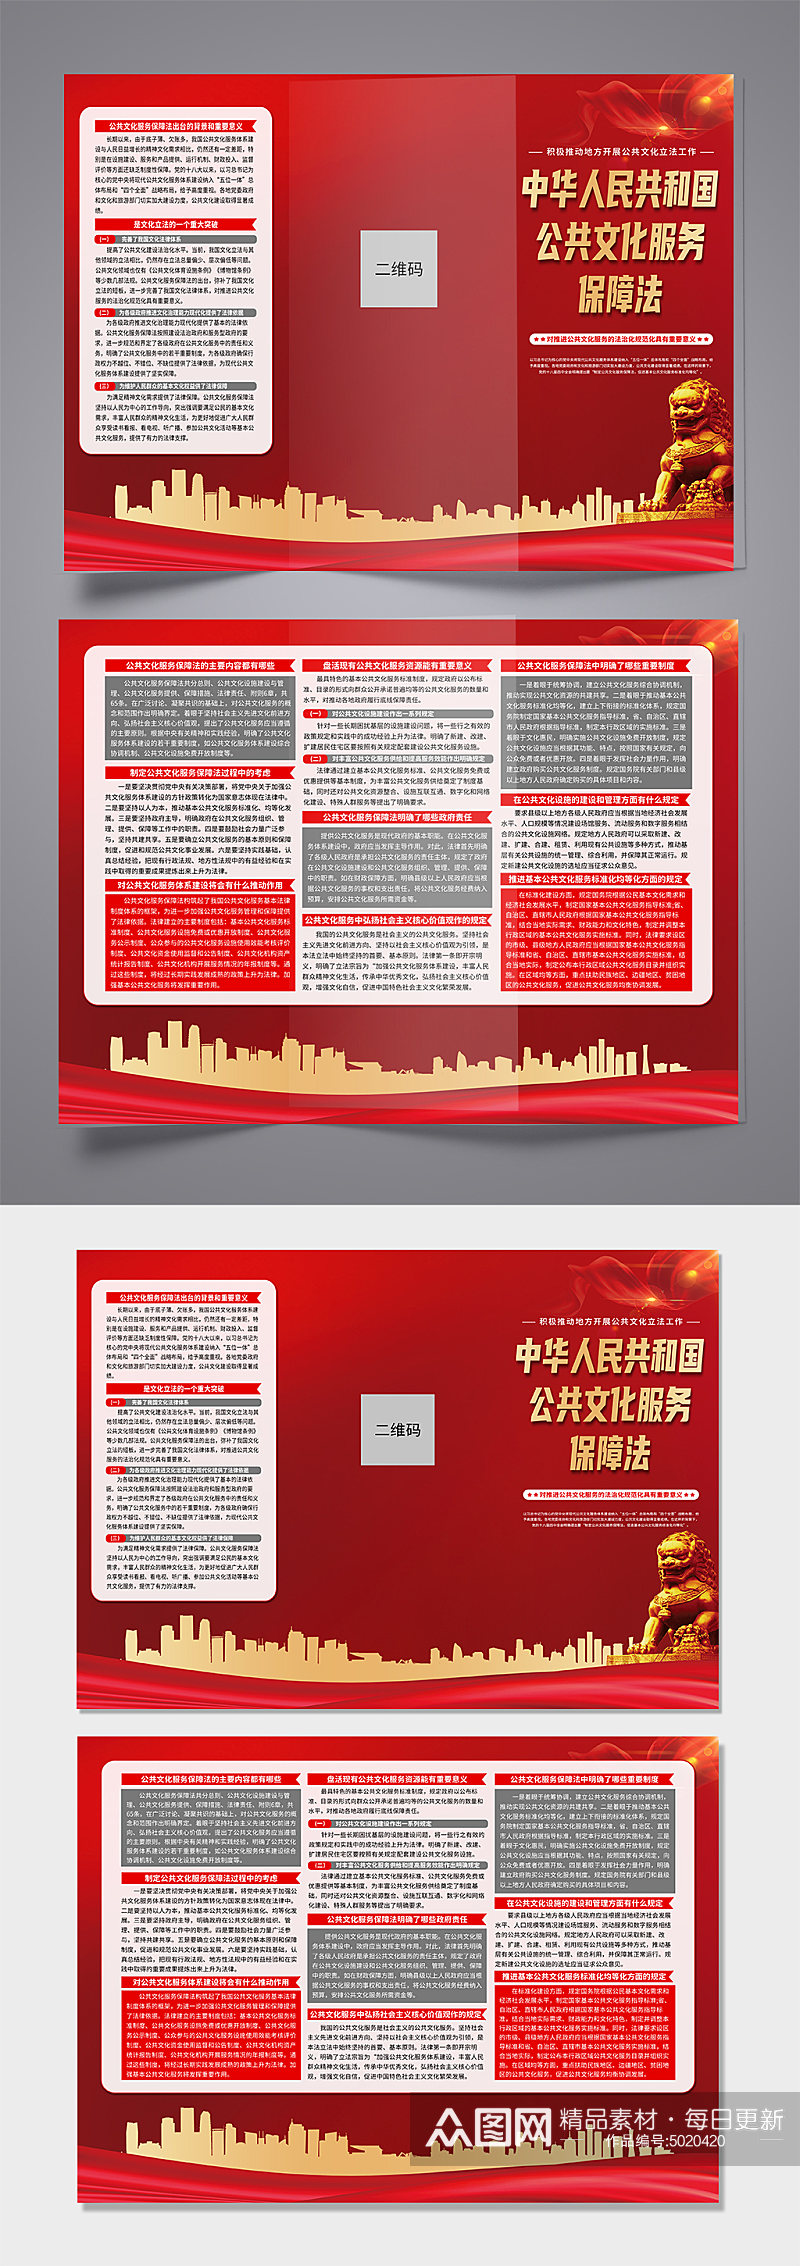 中华人民共和国公共文化服务保障法党建折页素材